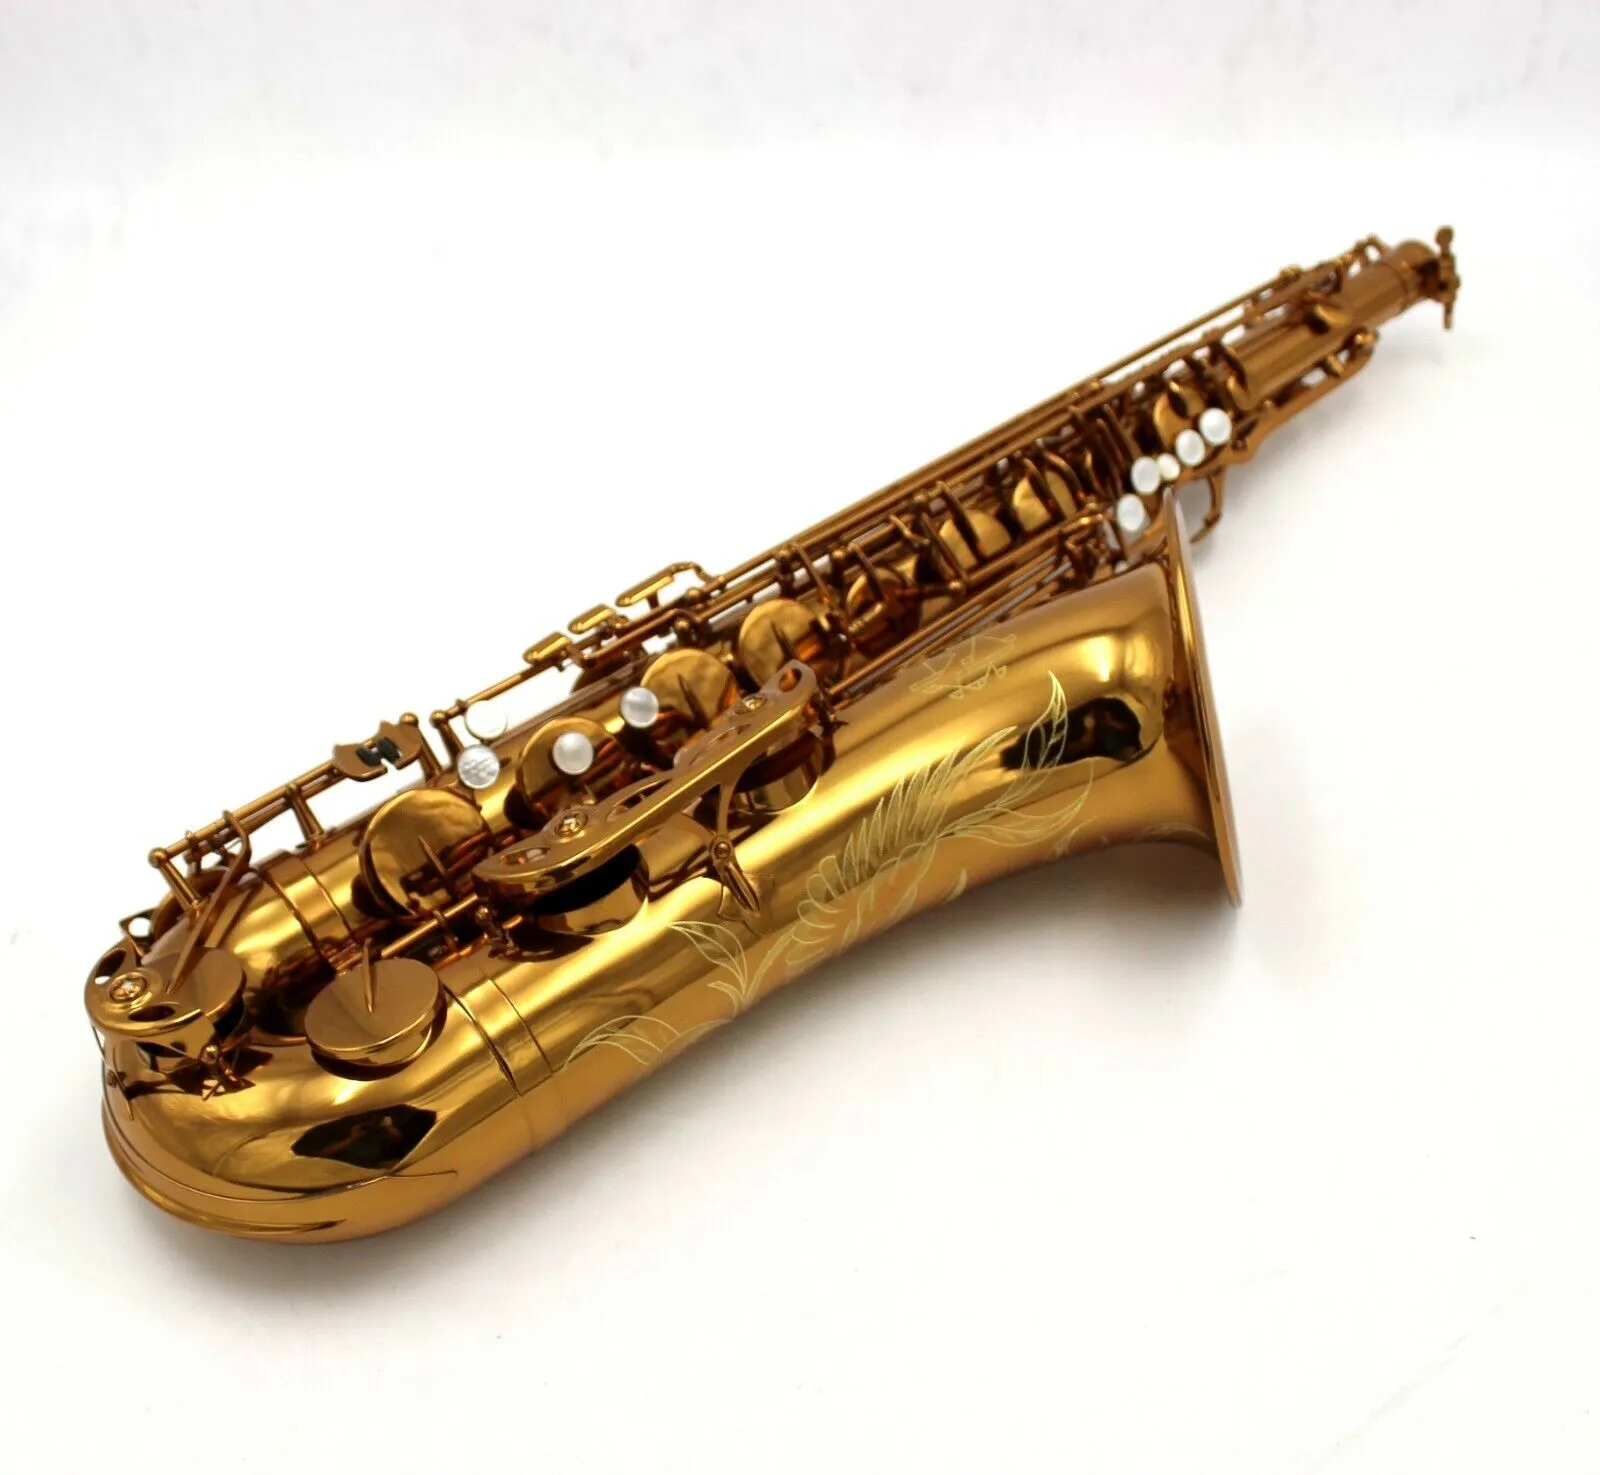 Восточная музыка, тенор-саксофон Mark VI, темно-золотой лак, тип no F #, в чехле для ПК